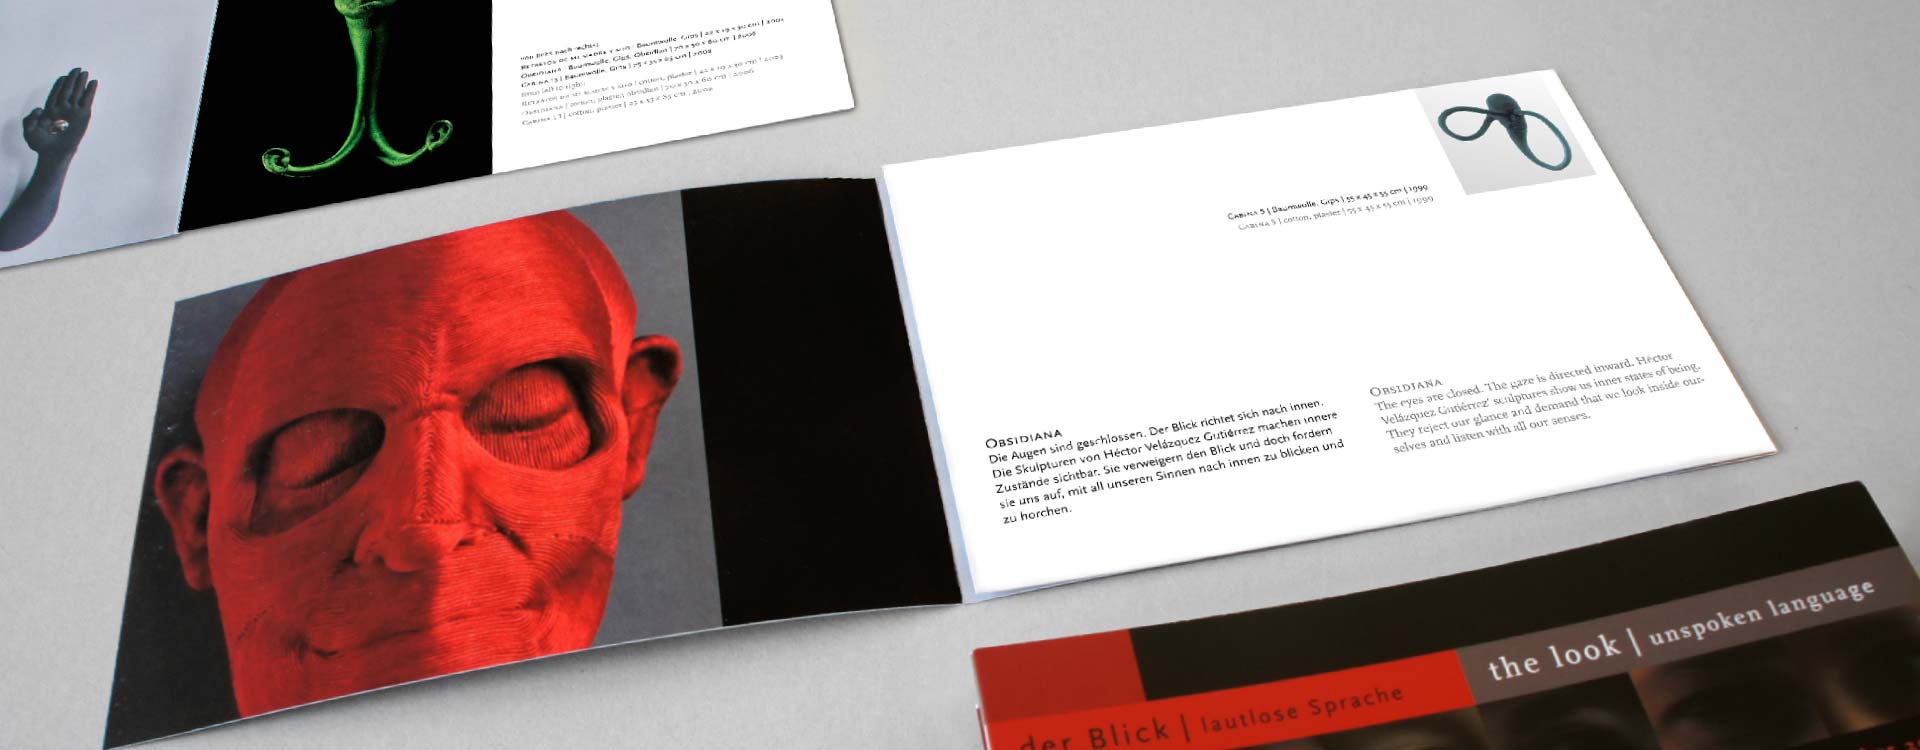 Leaflet about the work of Héctor Velázquez in the exhibition Der Blick; Design: Kattrin Richter | Graphic Design Studio